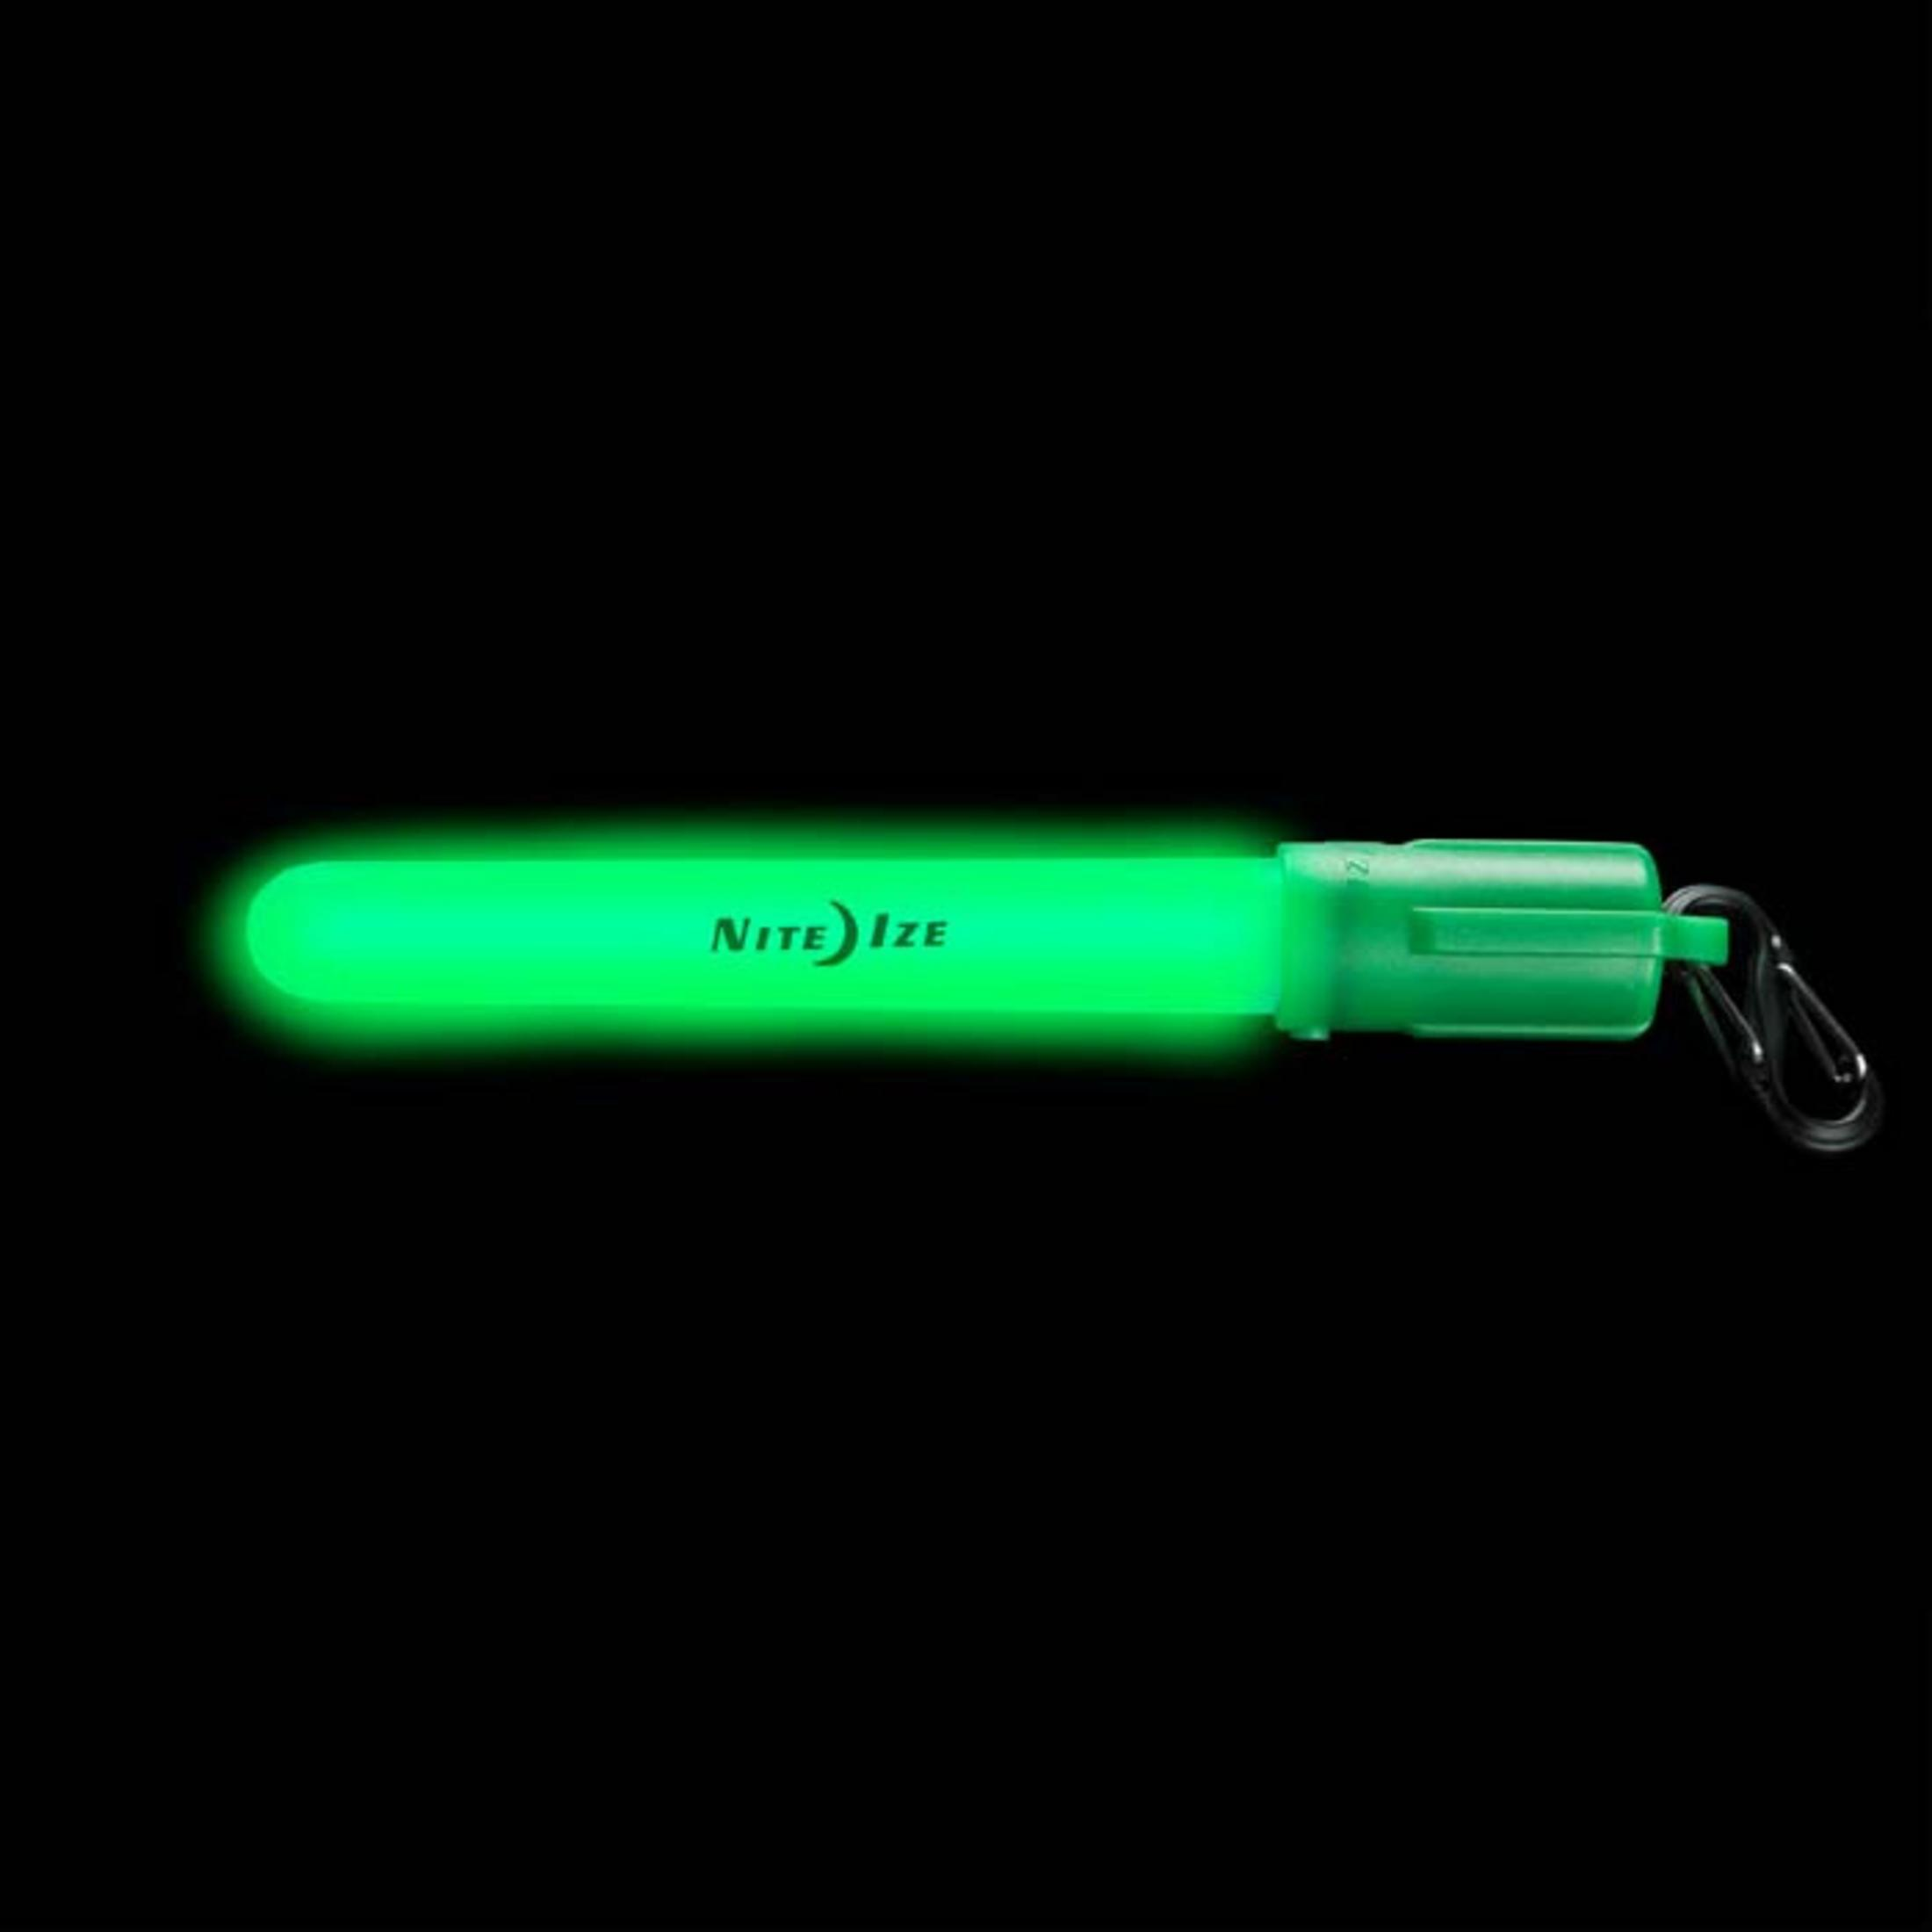 Mini LED Glowstick GRÜN NI-MGS-28-R6 LEUCHTSTAB NITE LED IZE